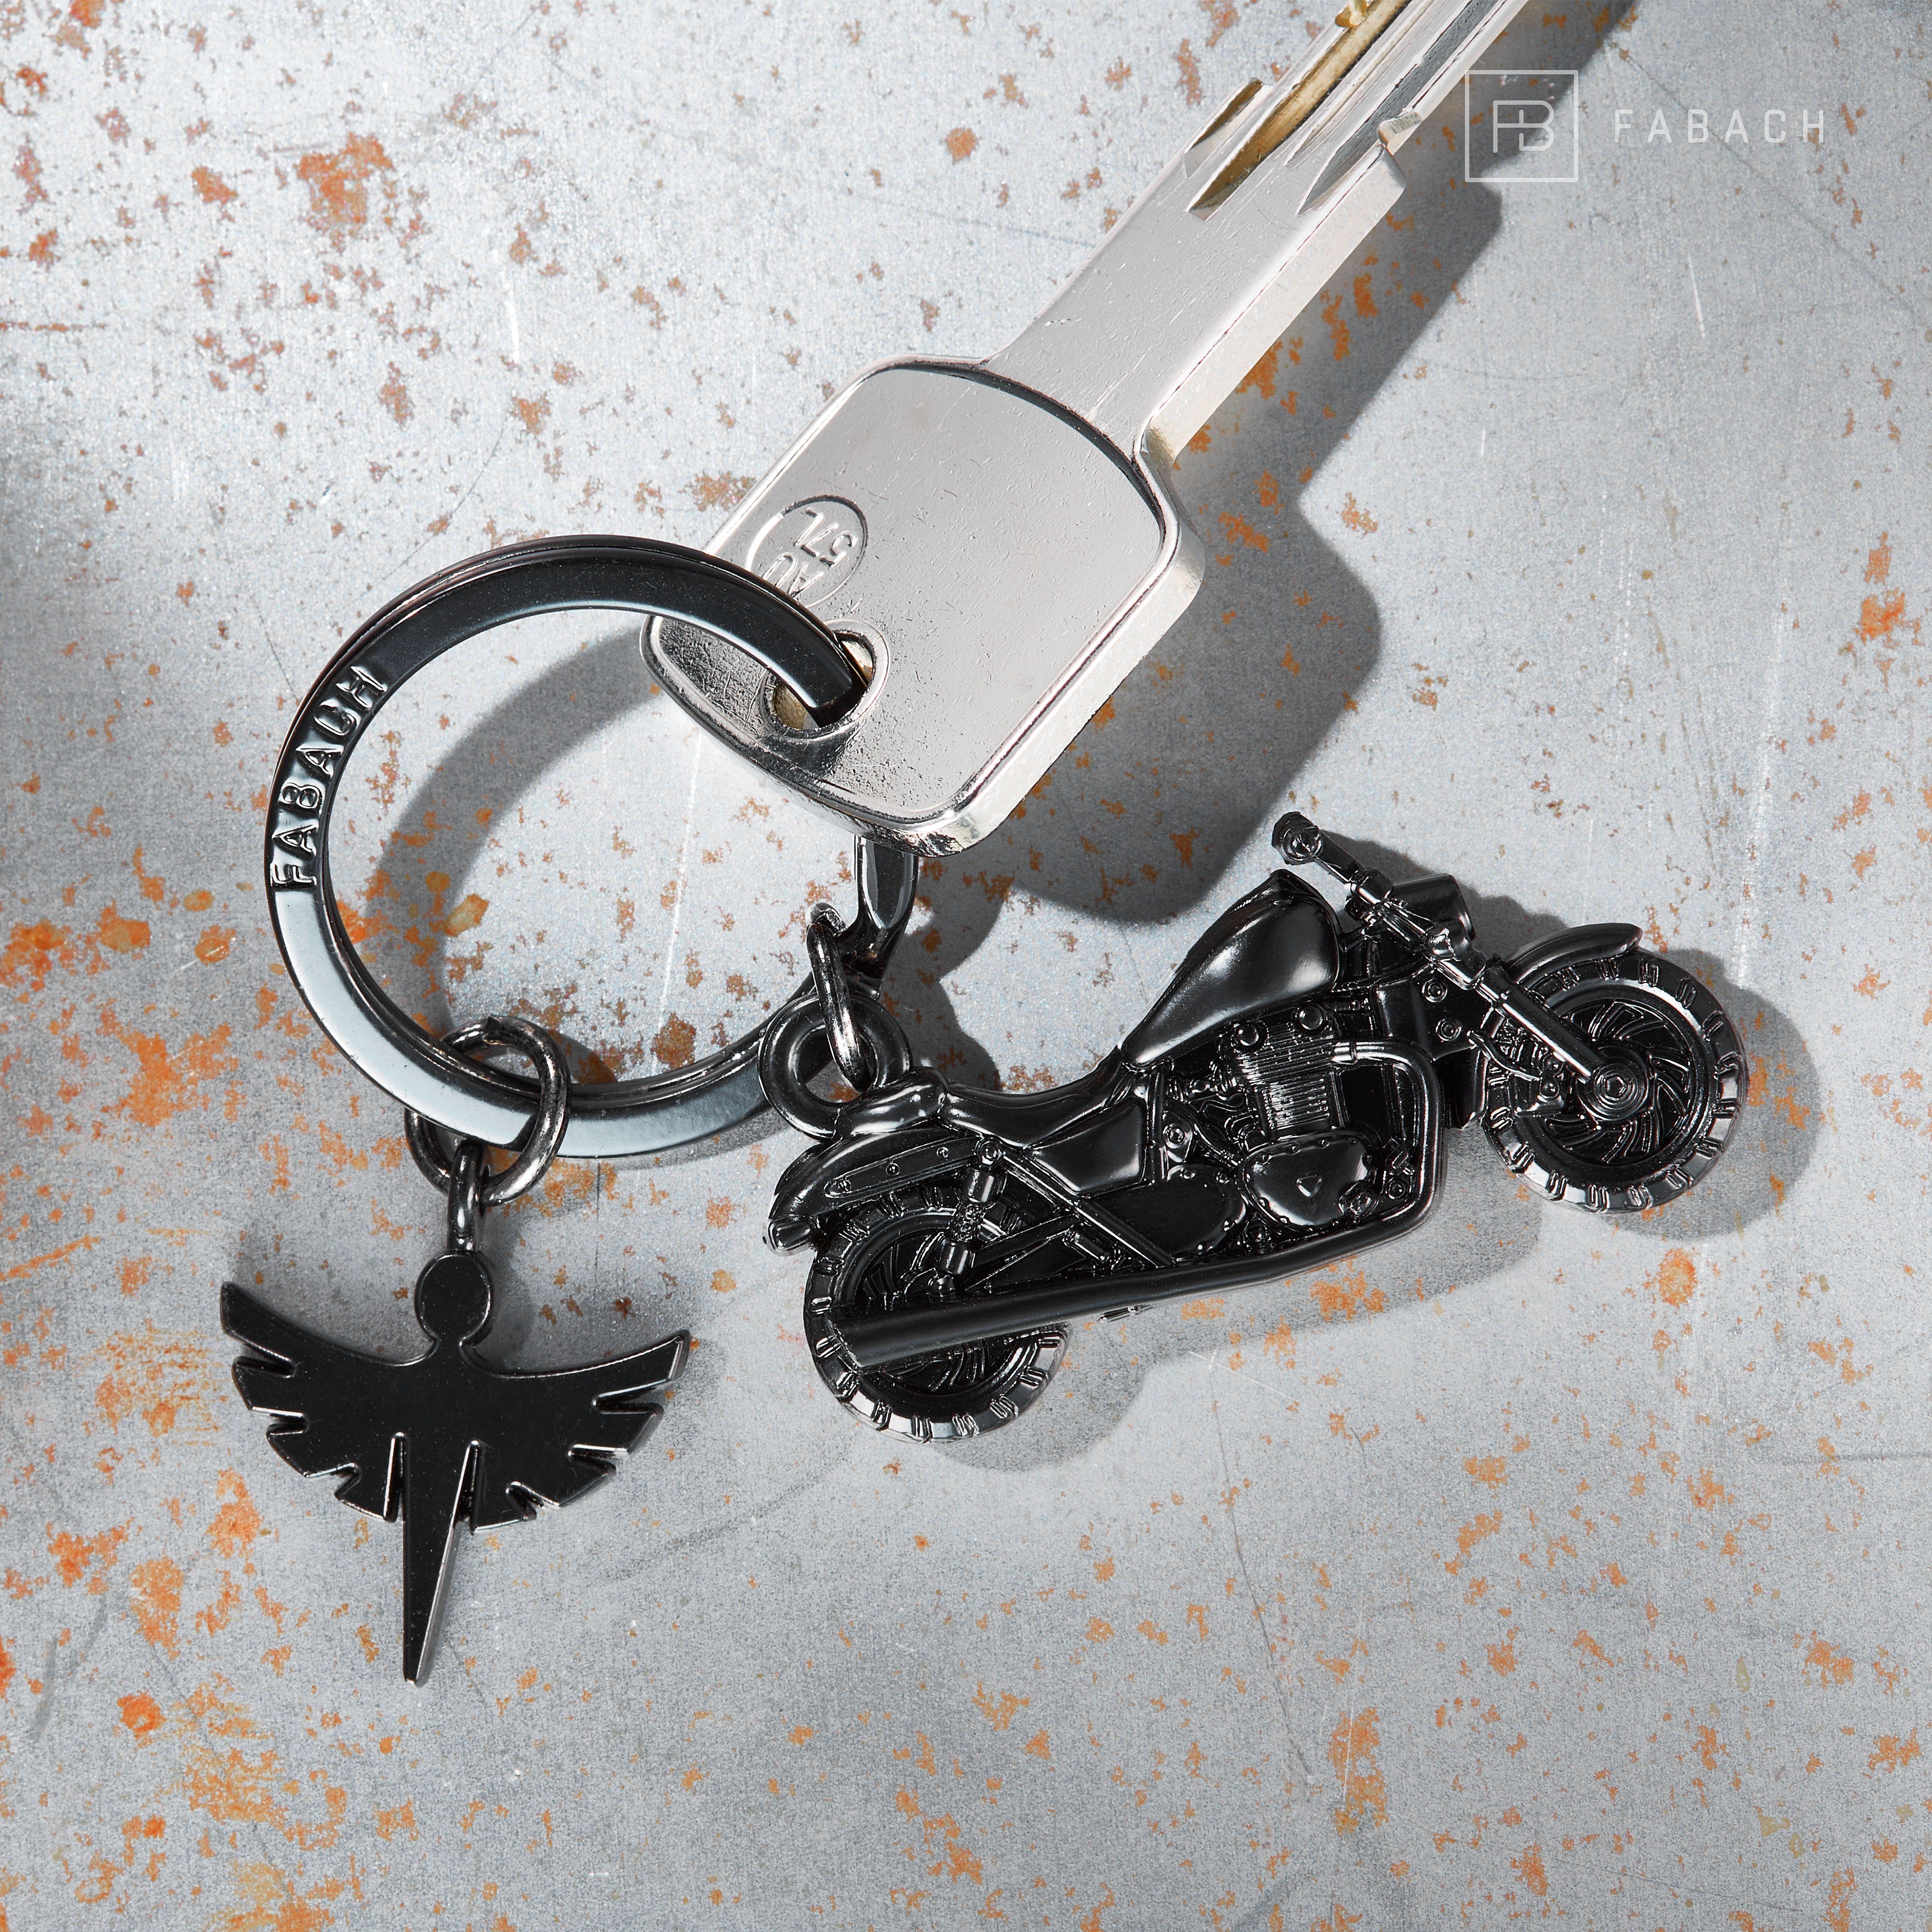 FABACH mit - Engel Schlüsselanhänger Motorradfahrer Antique Schutzengel Glücksbringer Chopper Motorrad Bronze